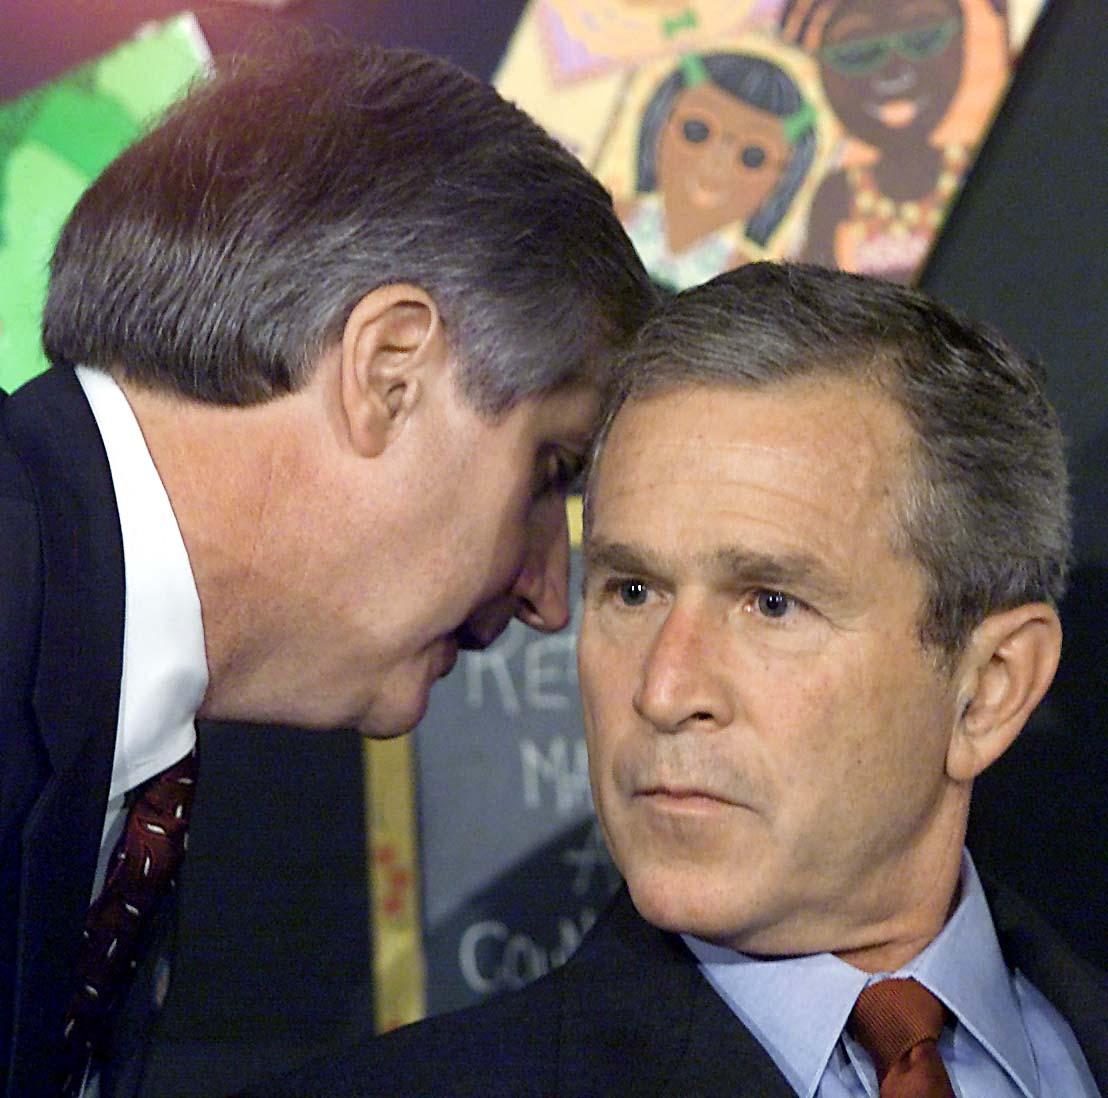 Momentul incredibil când George W. Bush primește vestea atacurilor teroriste din 11 septembrie